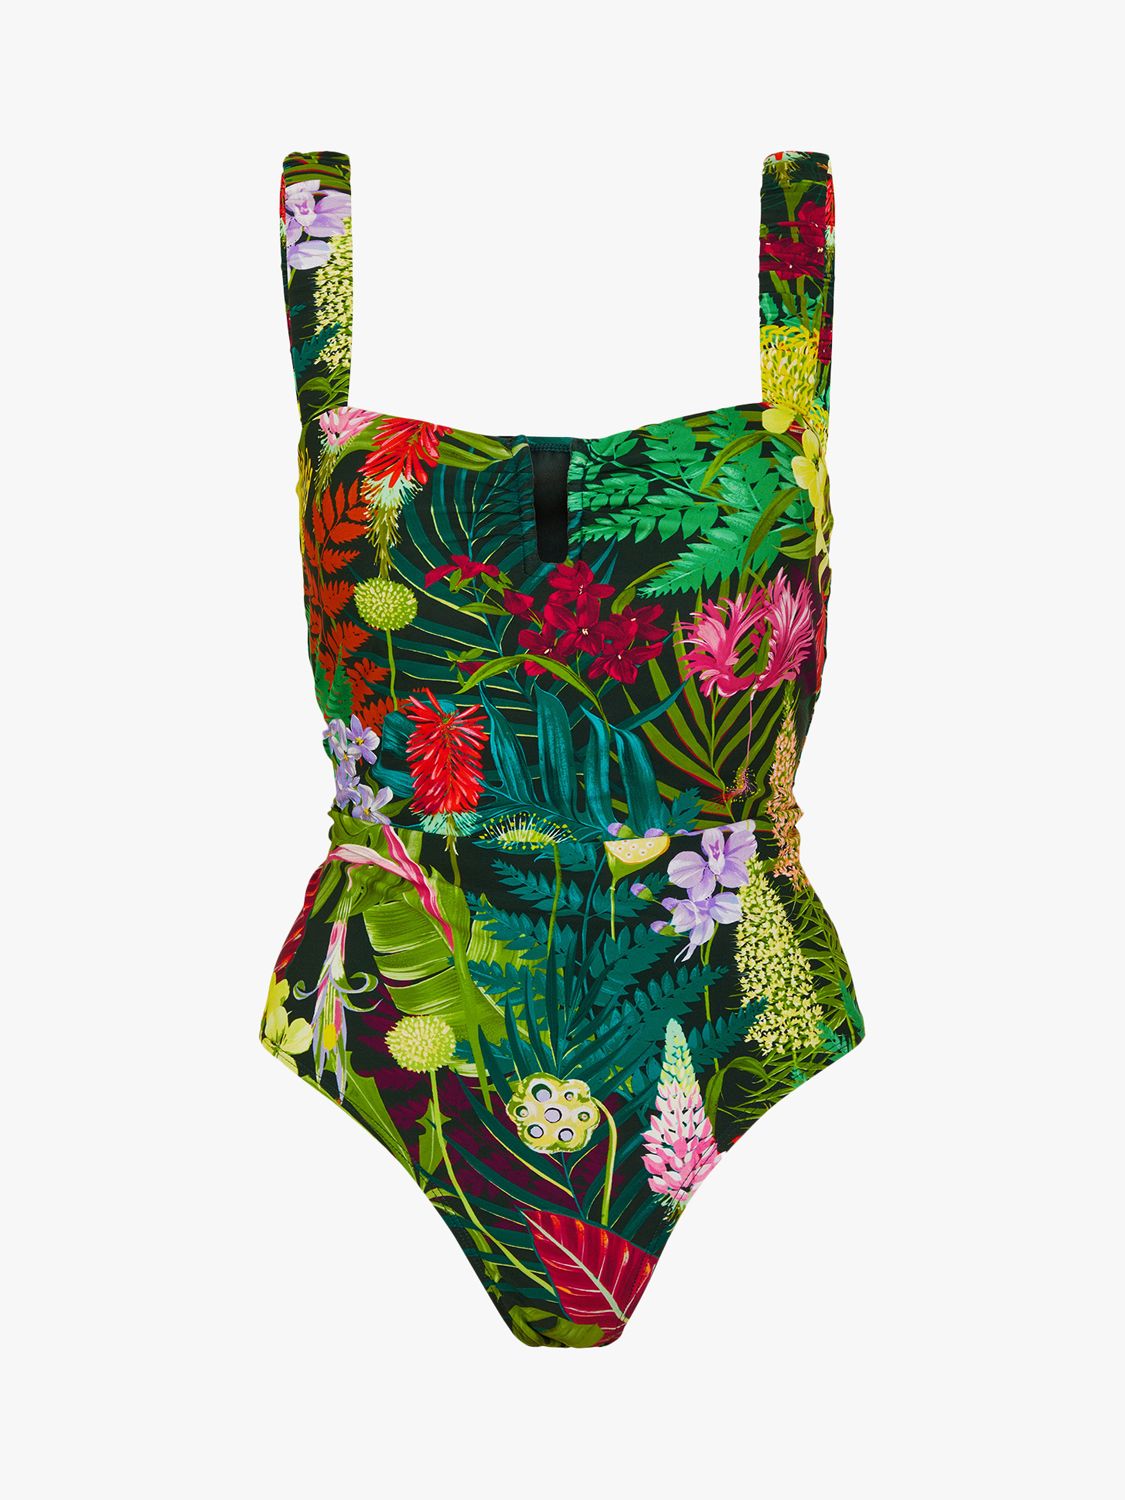 Accessorize Jungle Print Swimsuit, Multi, 6